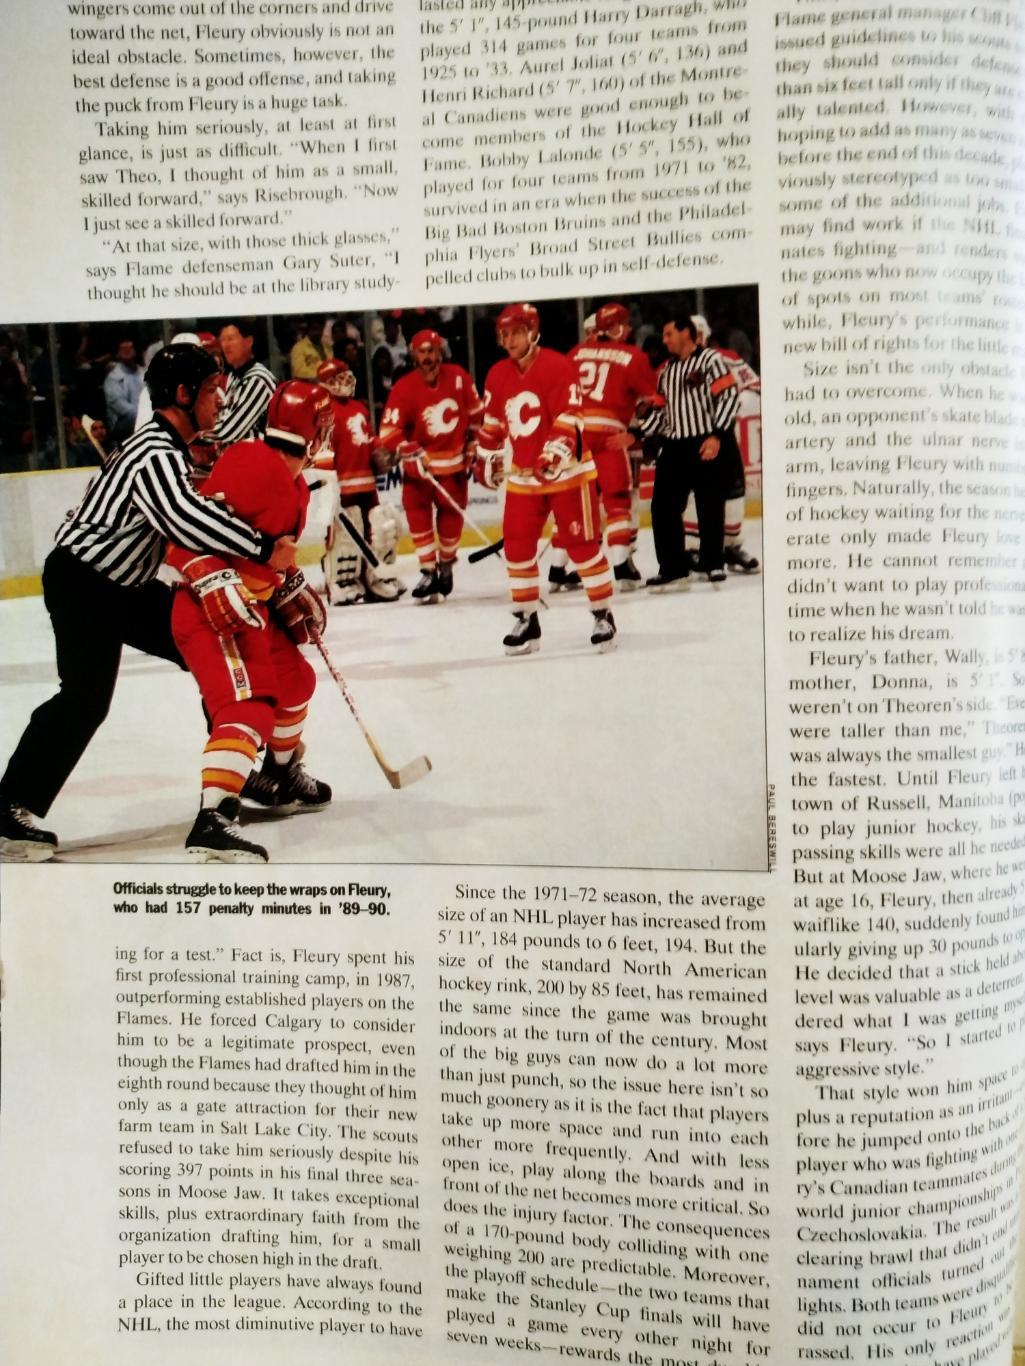 ХОККЕЙ ЕЖЕНЕДЕЛЬНИК СПОРТ ИЛЛЮСТРЕЙТЕД НХЛ 10 DEC 1990 NHL SPORTS ILLUSTRATED 3